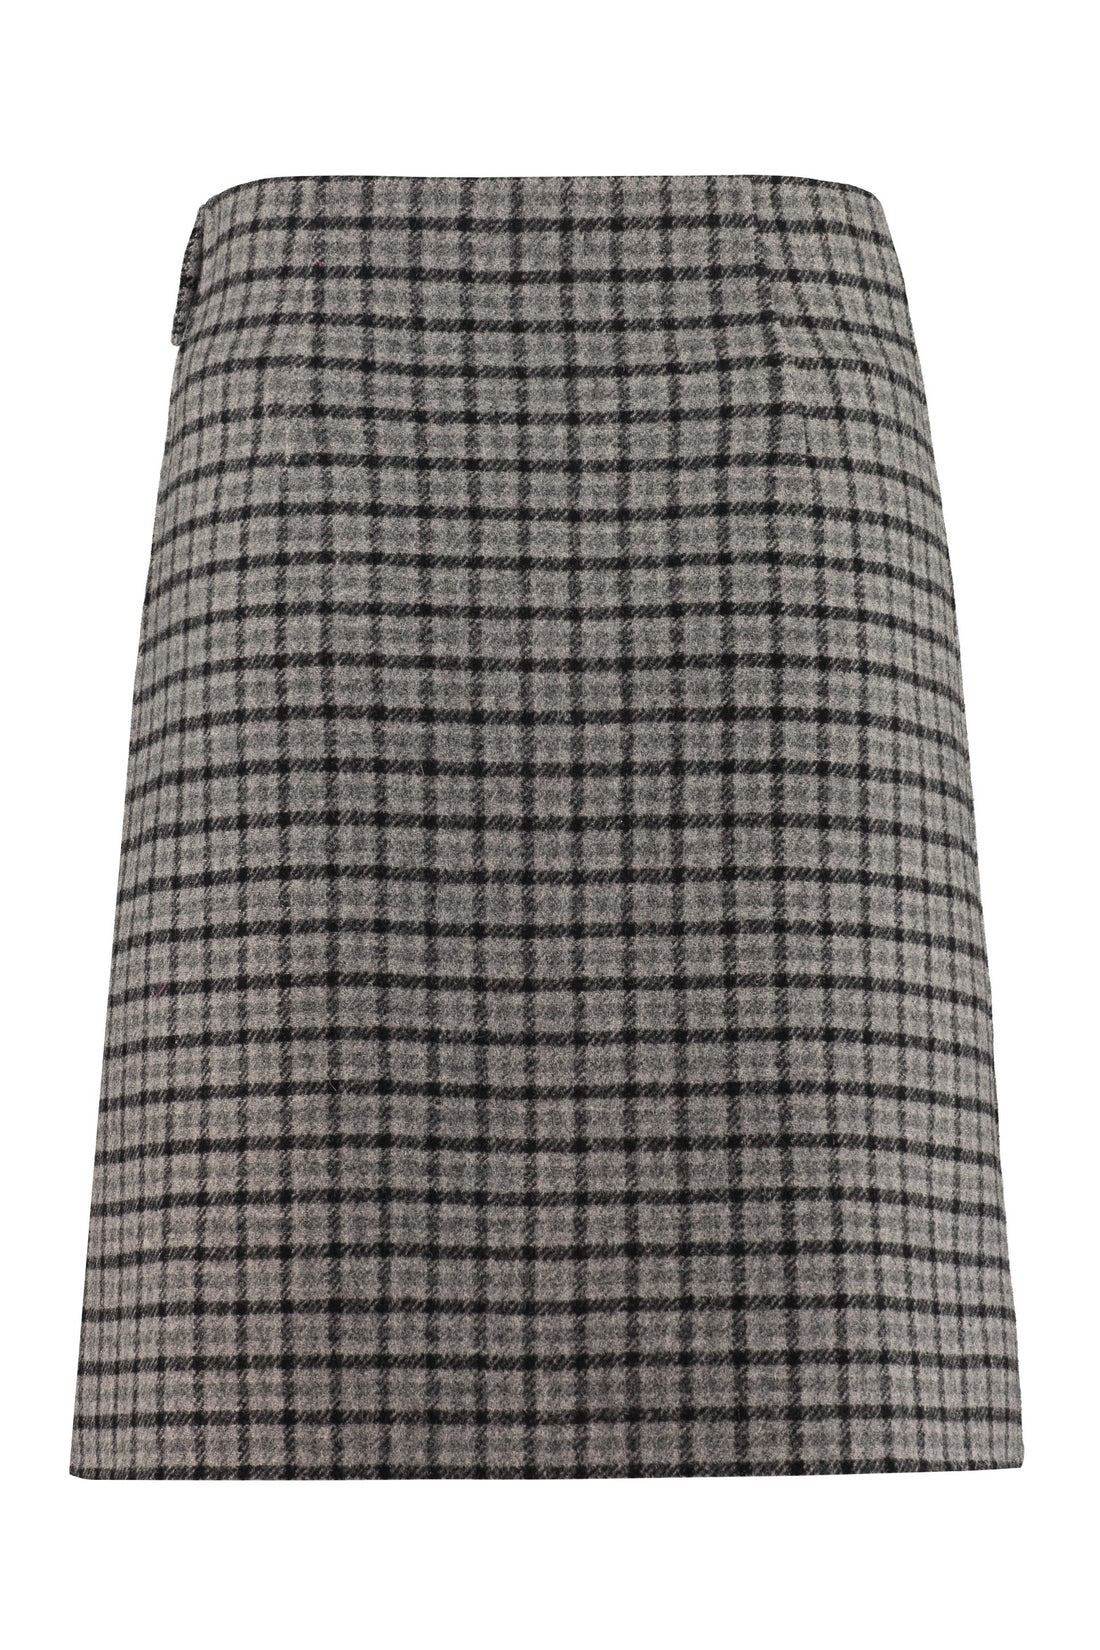 Parosh-OUTLET-SALE-Liar wool wrap skirt-ARCHIVIST